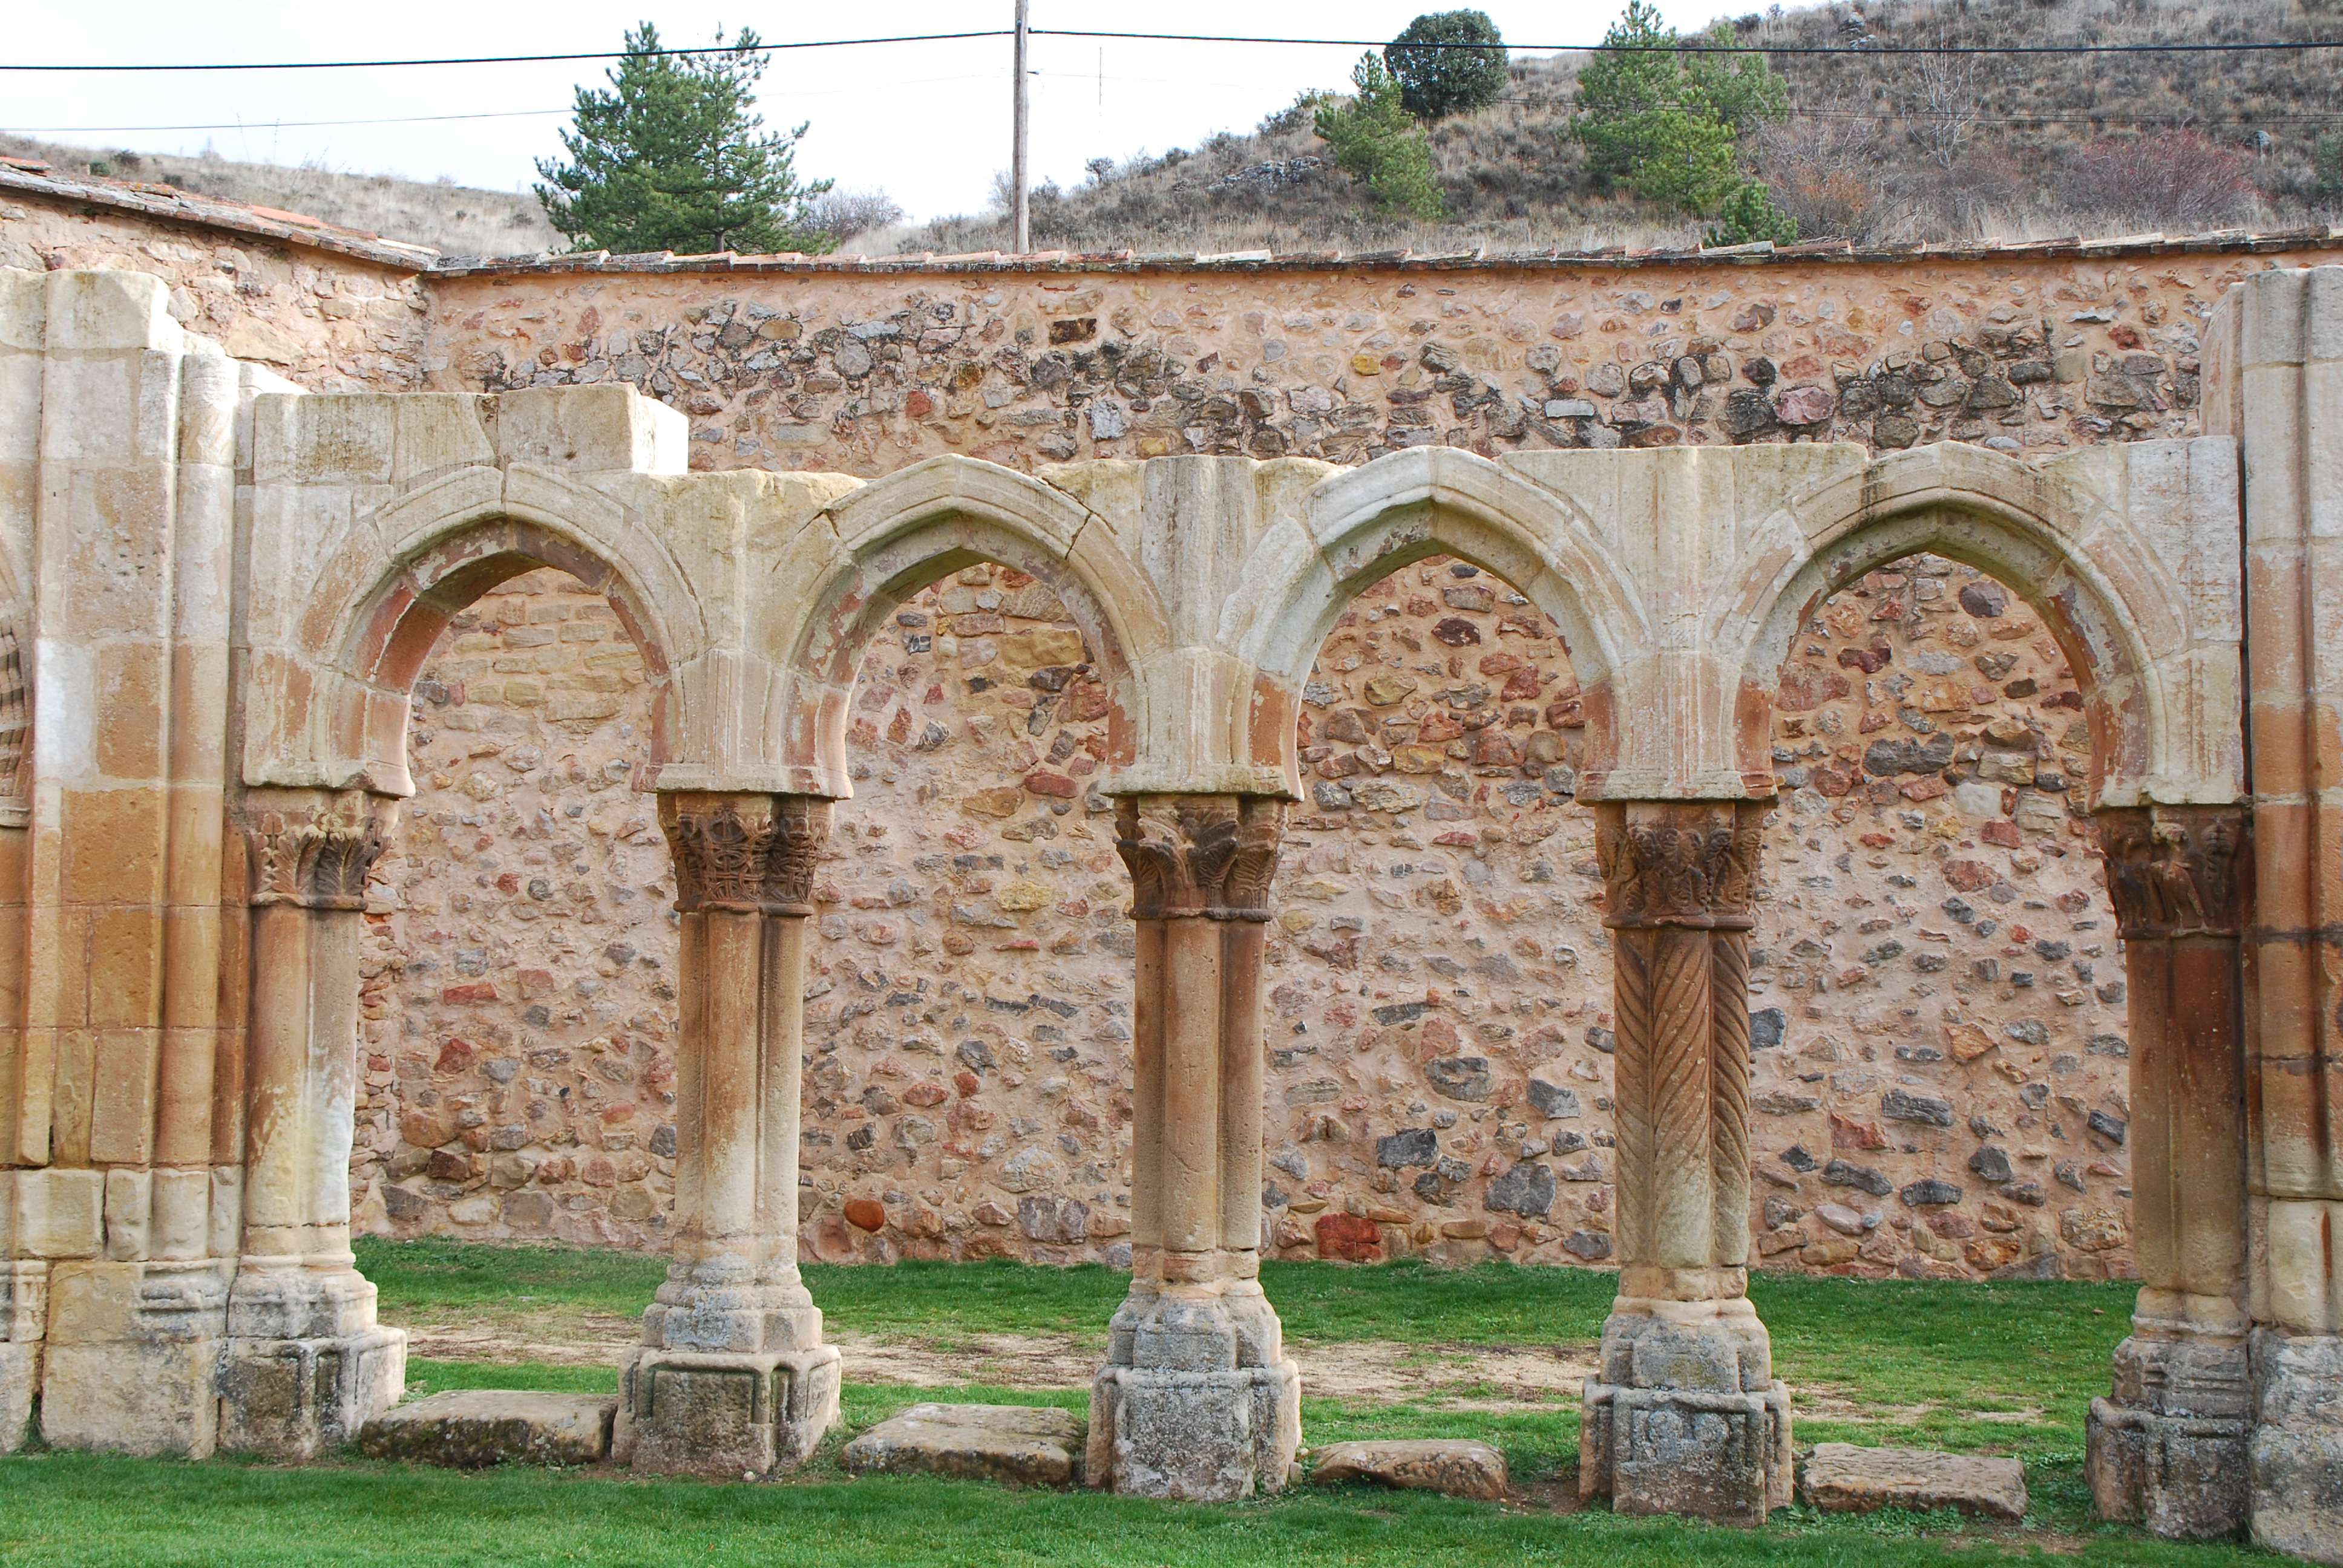 Monasterio de San Juan de Duero. Un enigma - Blogs de España - Monasterio de San Juan de Duero (8)